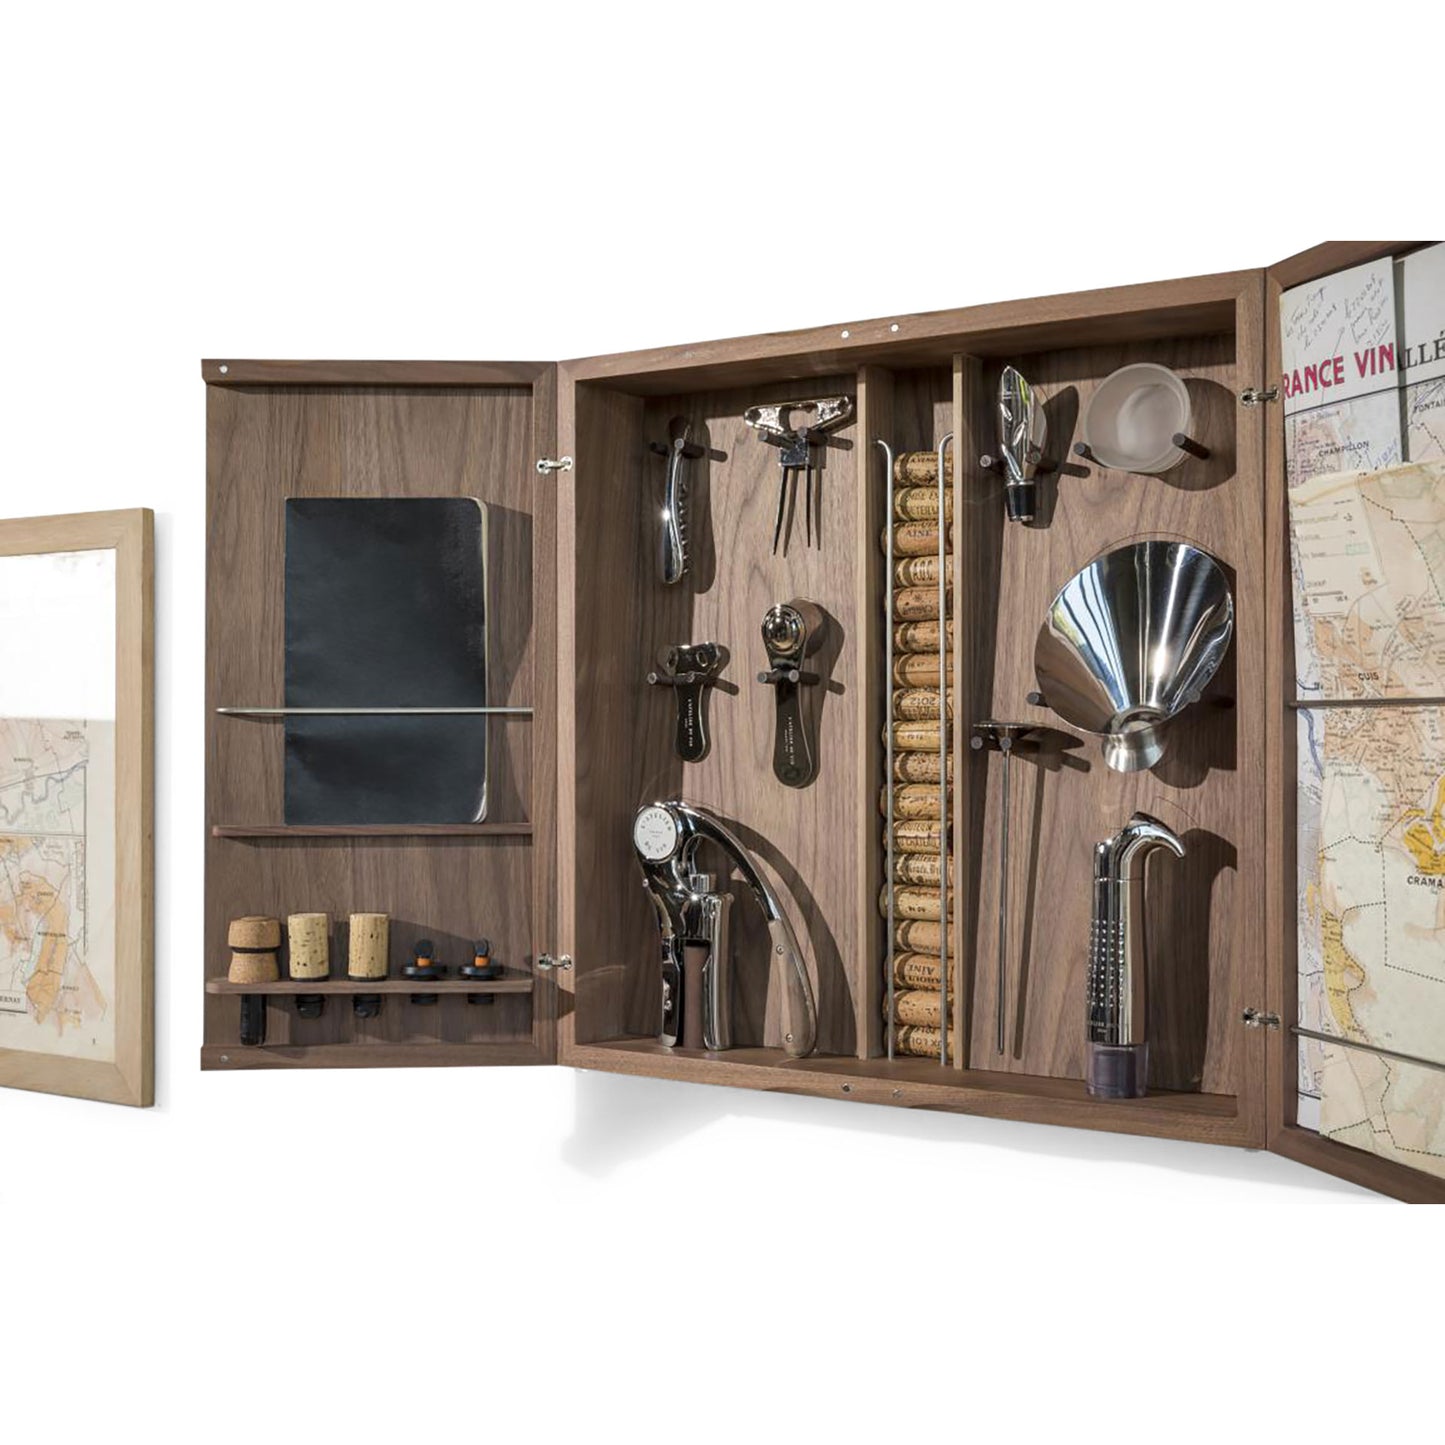 L'Atelier du Vin Wine Tools Cabinet